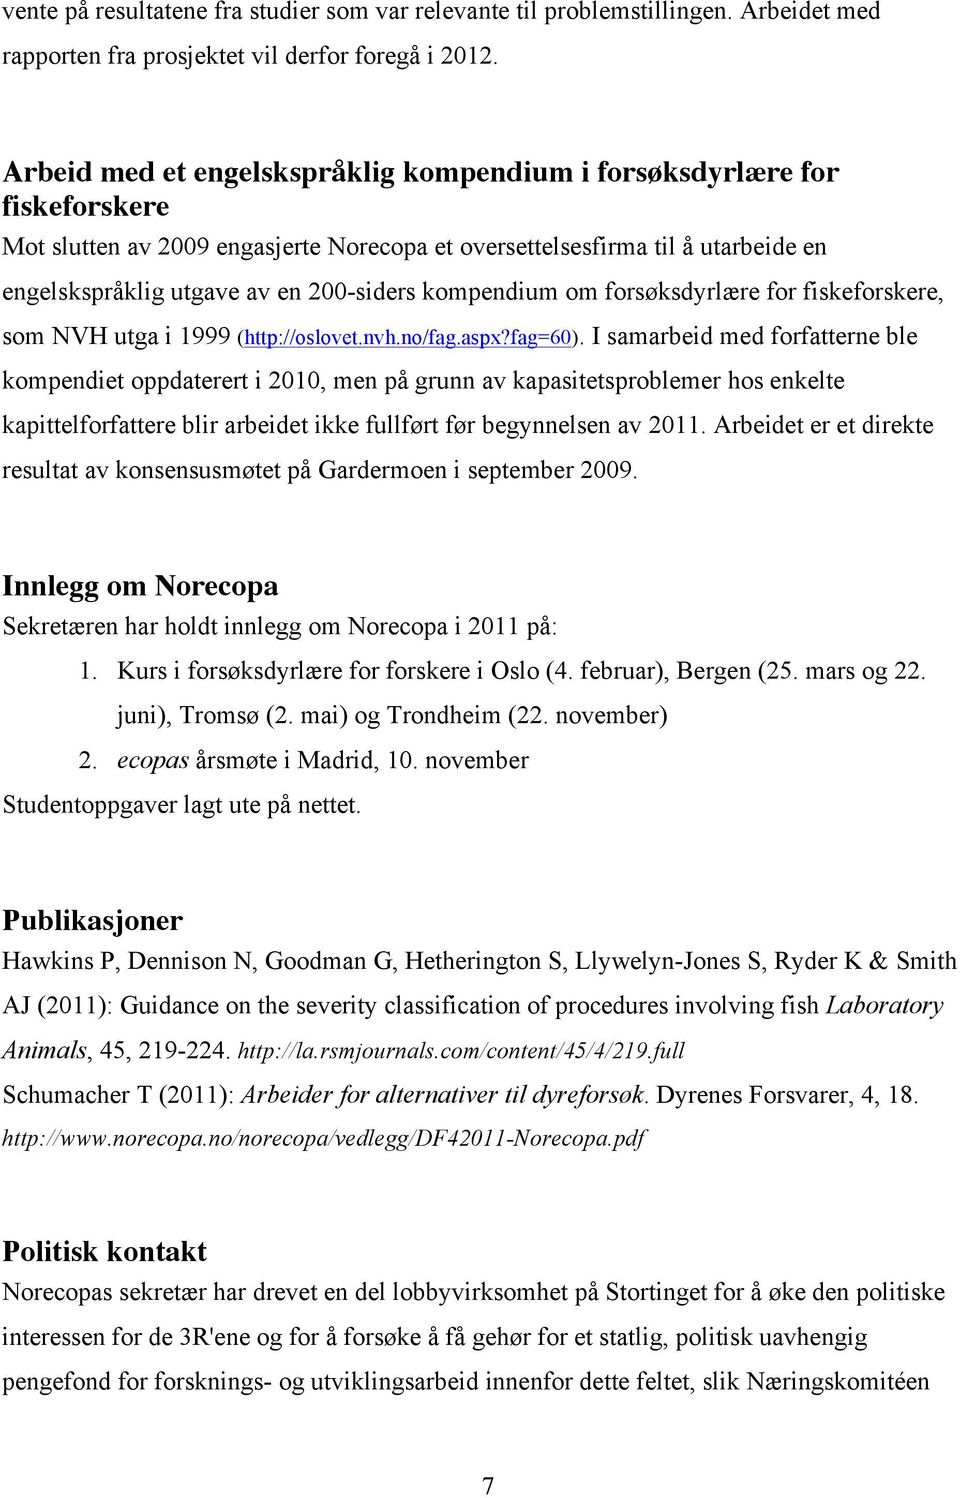 kompendium om forsøksdyrlære for fiskeforskere, som NVH utga i 1999 (http://oslovet.nvh.no/fag.aspx?fag=60).